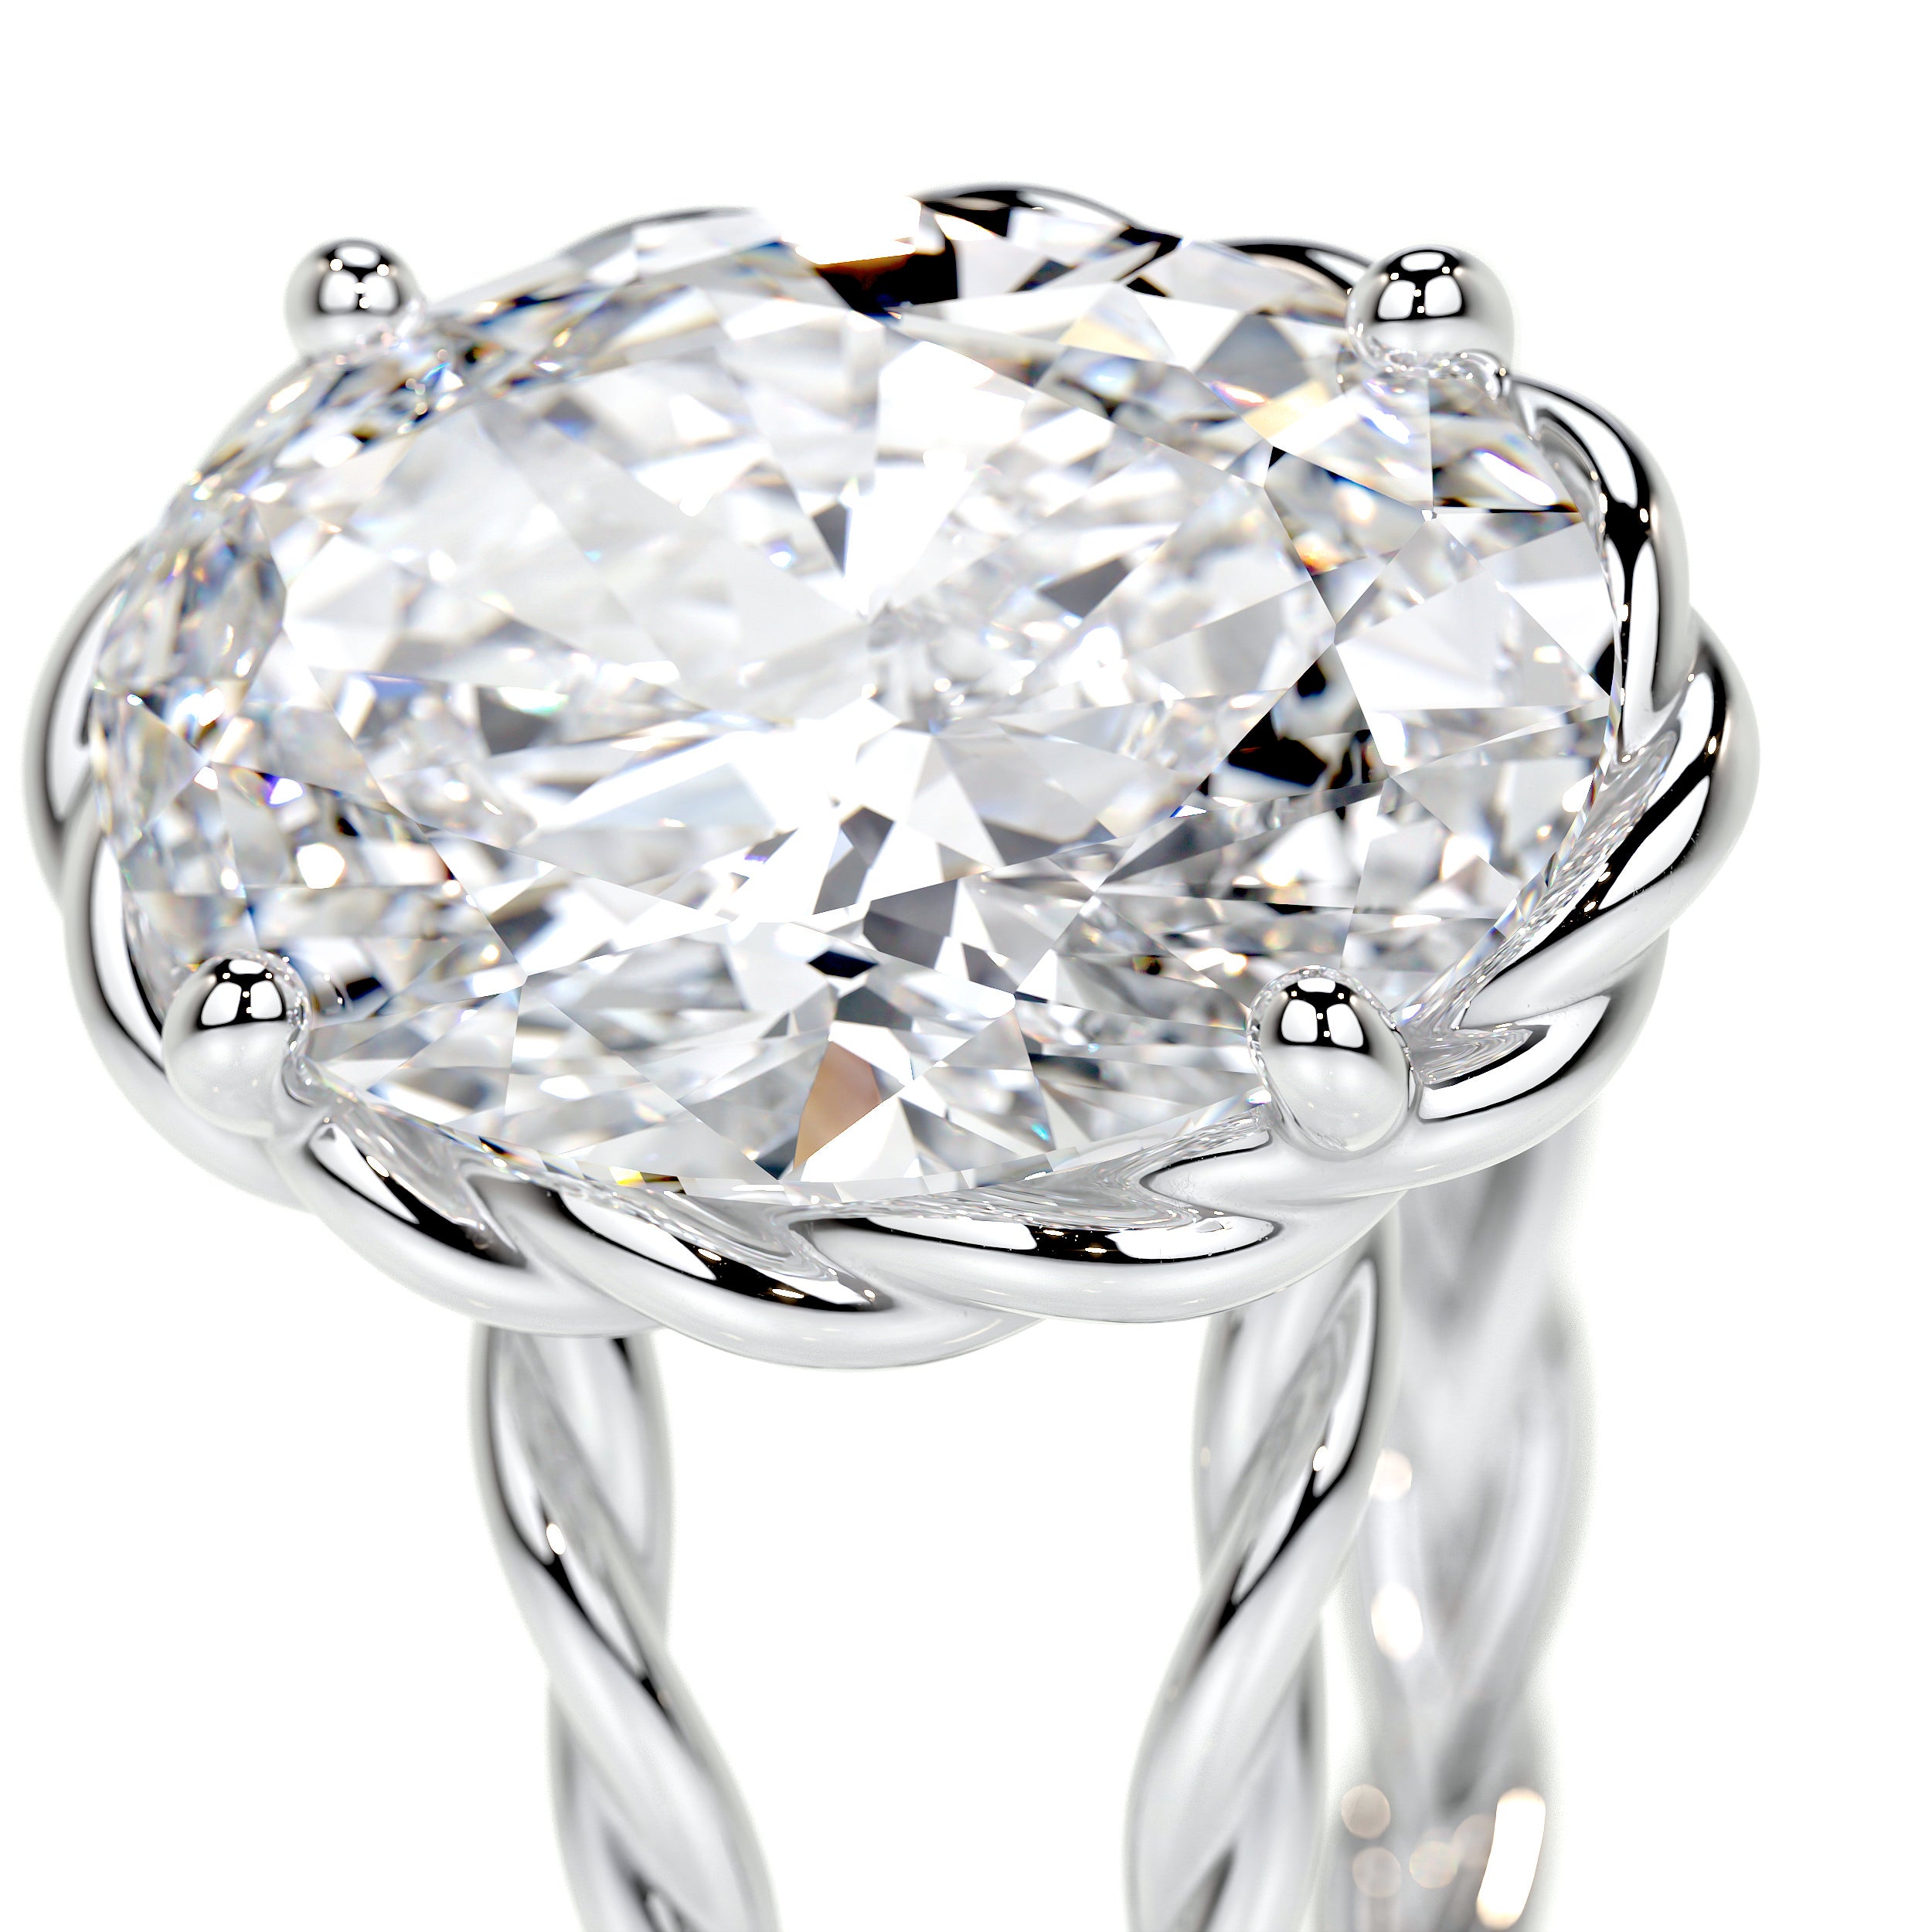 Milani Lab Grown Diamond Ring -18K White Gold